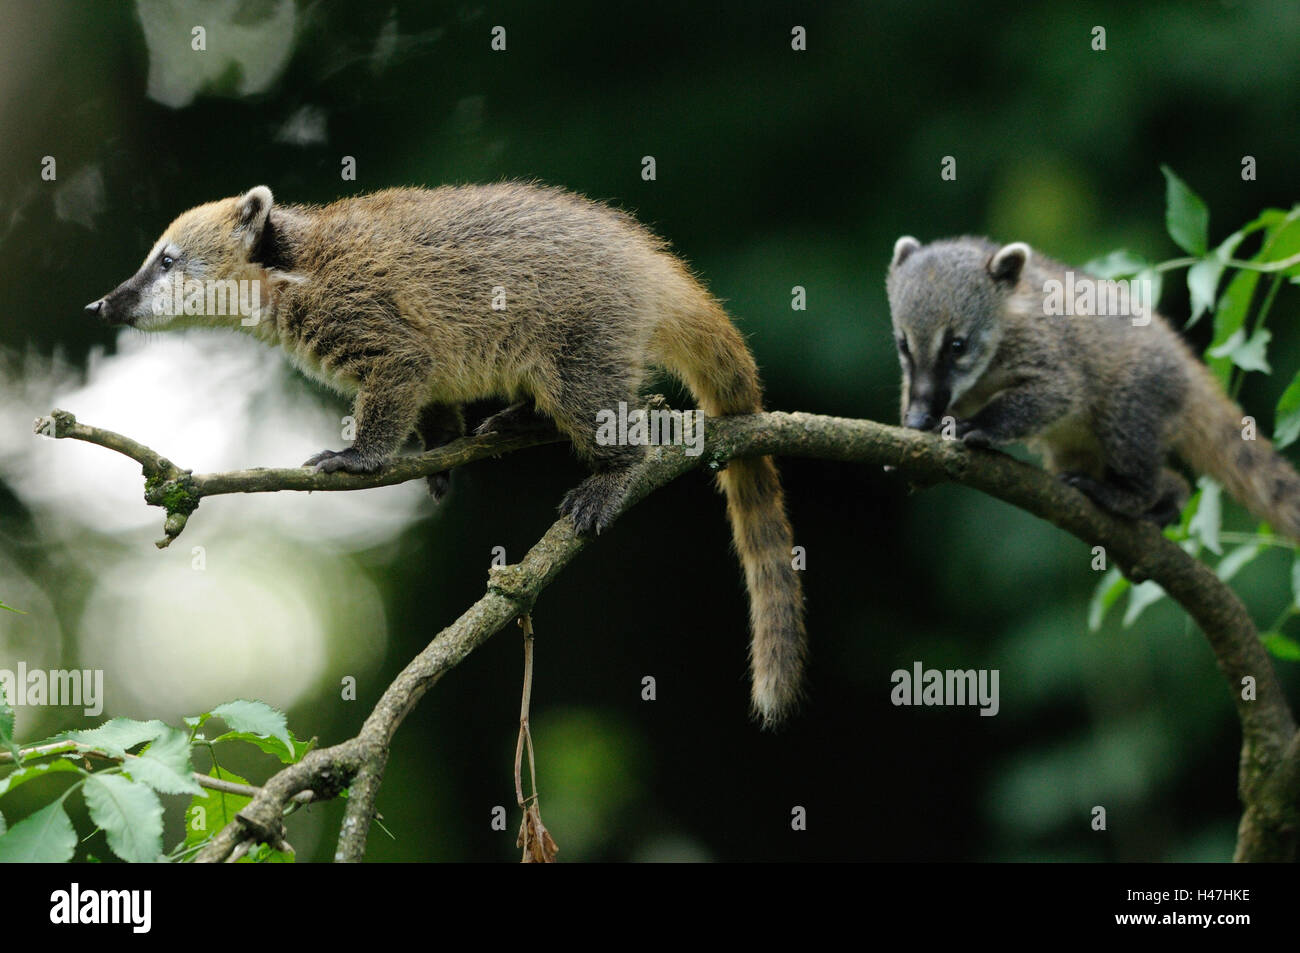 South American coatis, Nasua nasua, young animals, climbing, Stock Photo